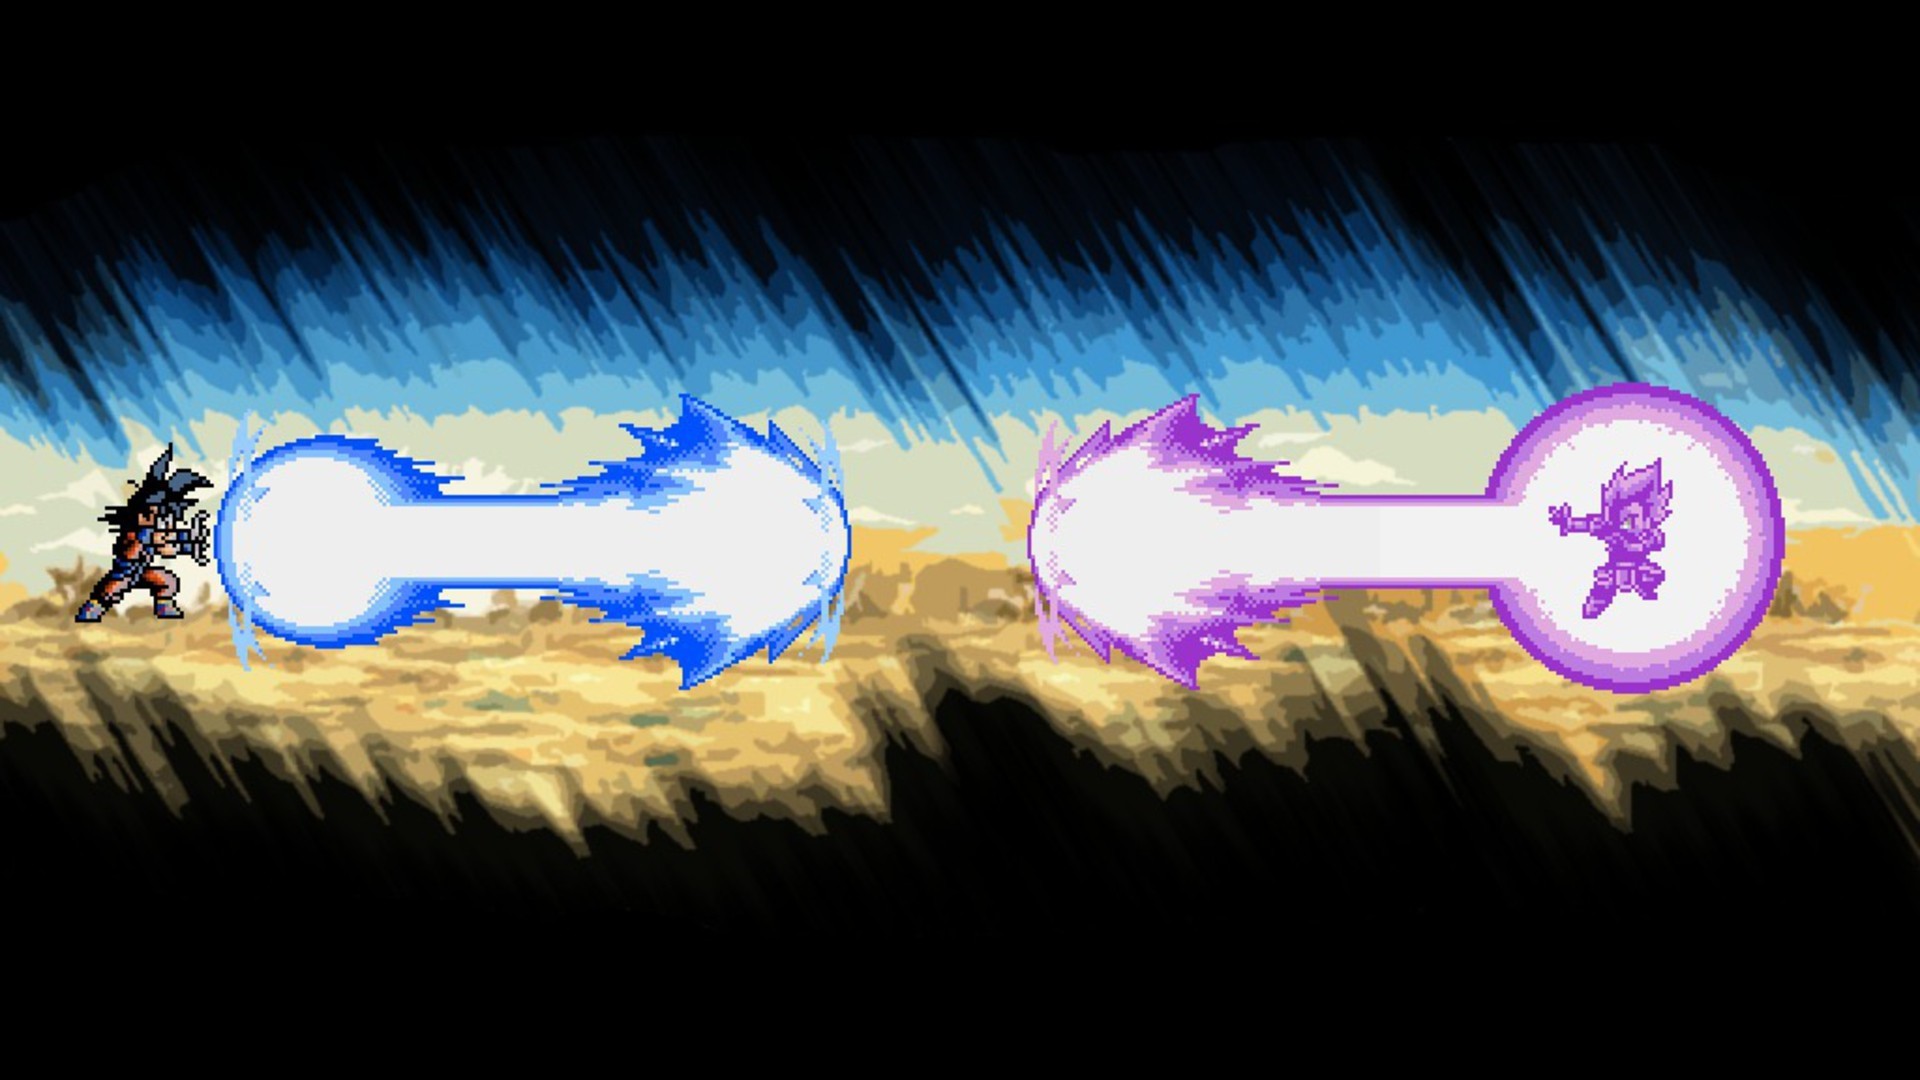 Vegeta Son Goku Dragon Ball Z goku vs vegeta Kakarotto wallpaper .